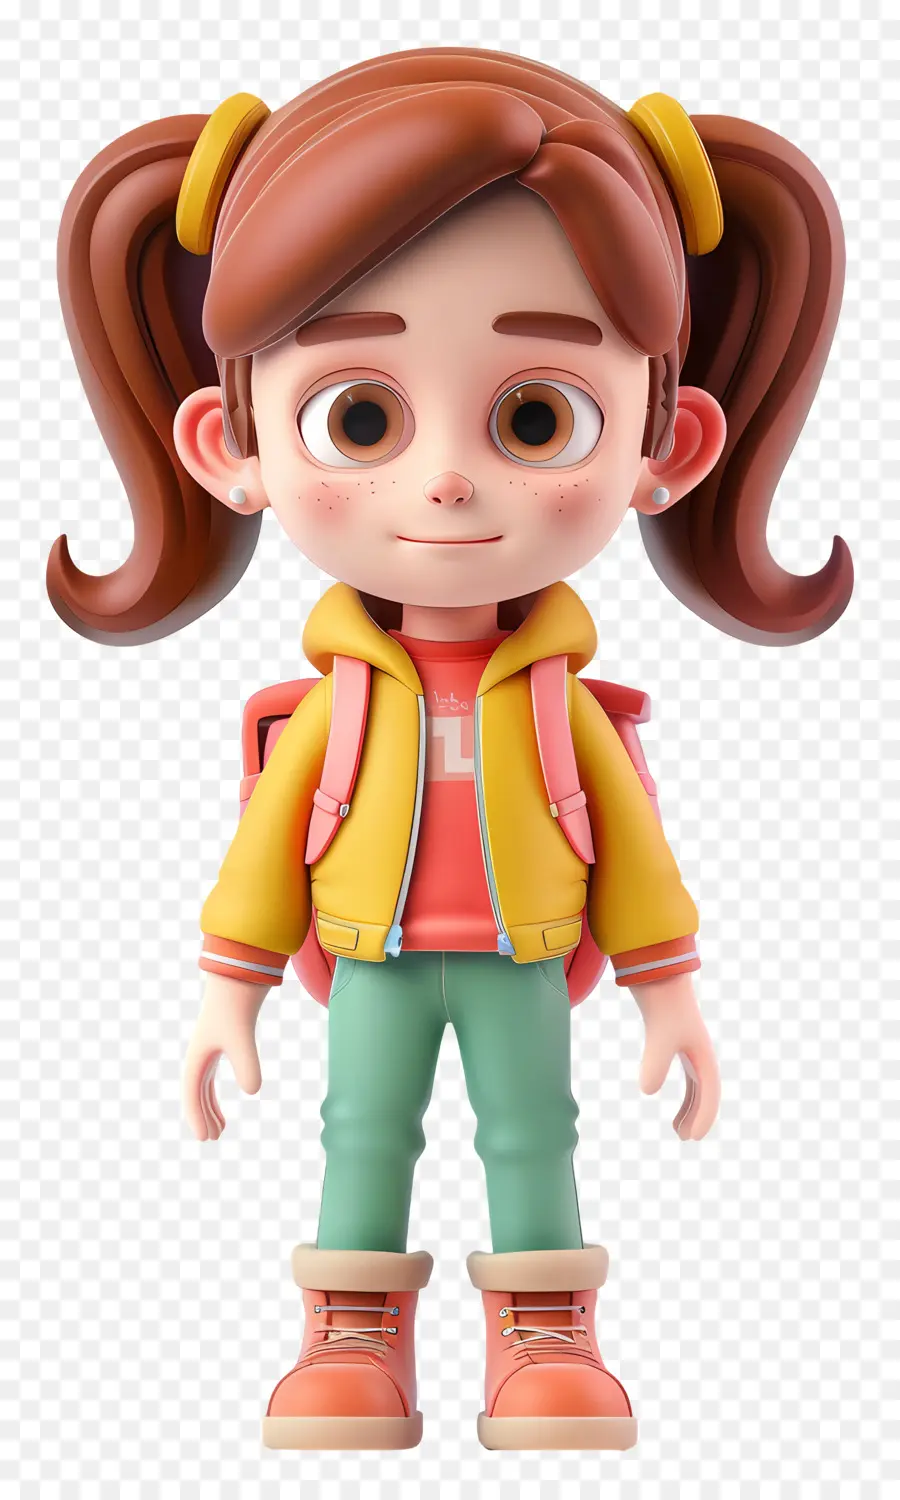 Küçük Kız Karakteri，öğrenci Karakteri PNG